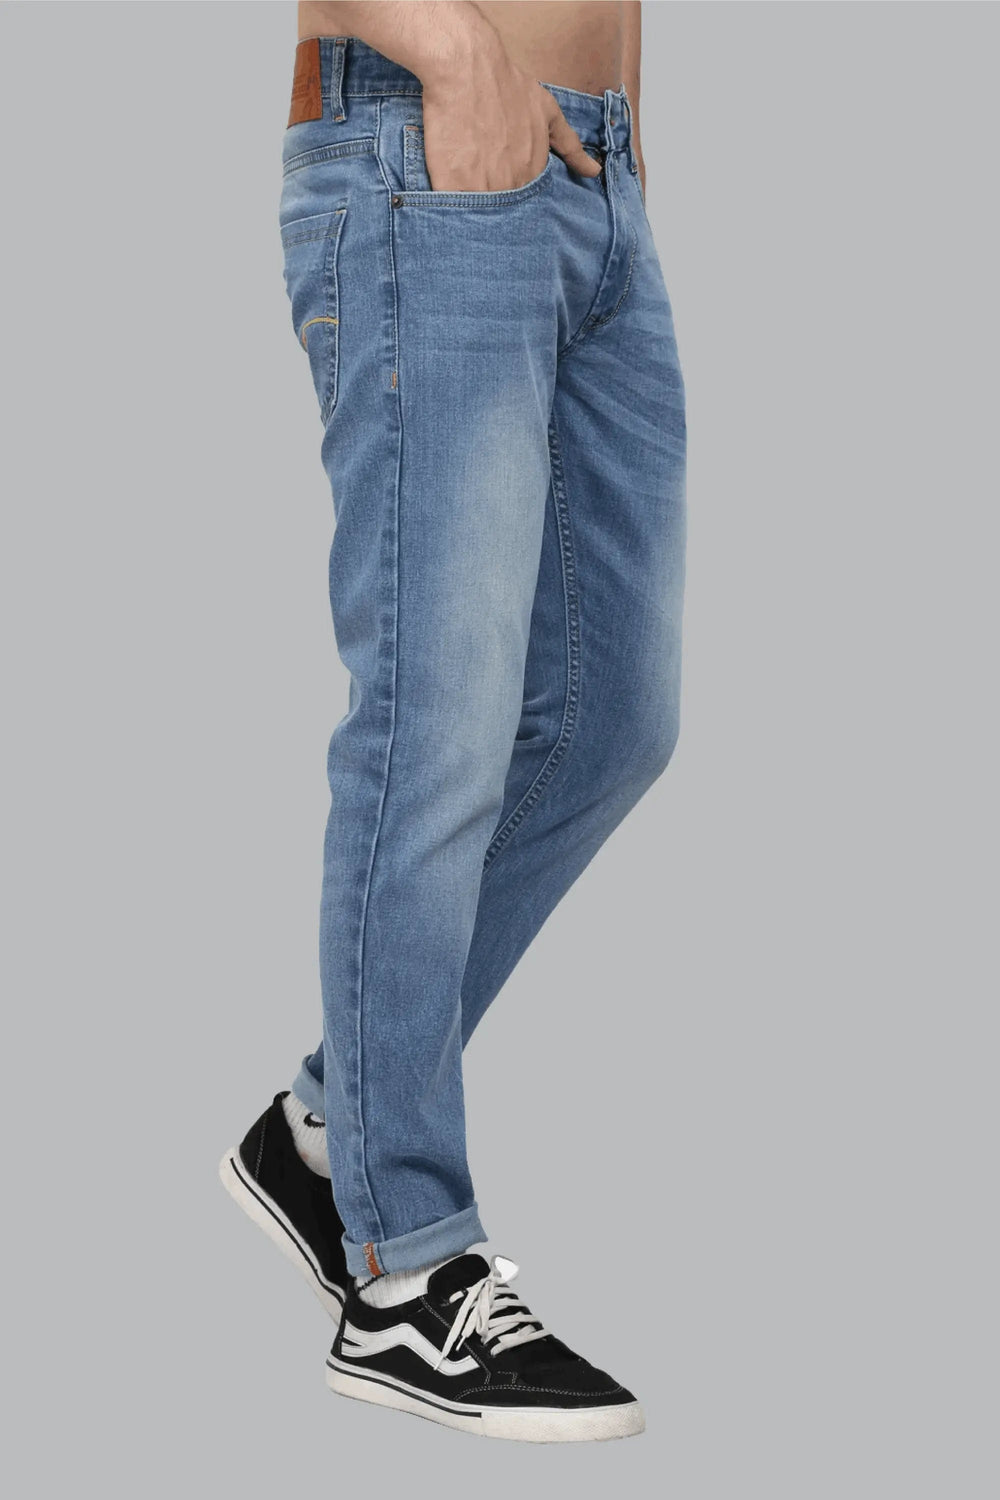 Ankle Fit Premium Light Blue Men's Denim Jeans - Peplos Jeans 